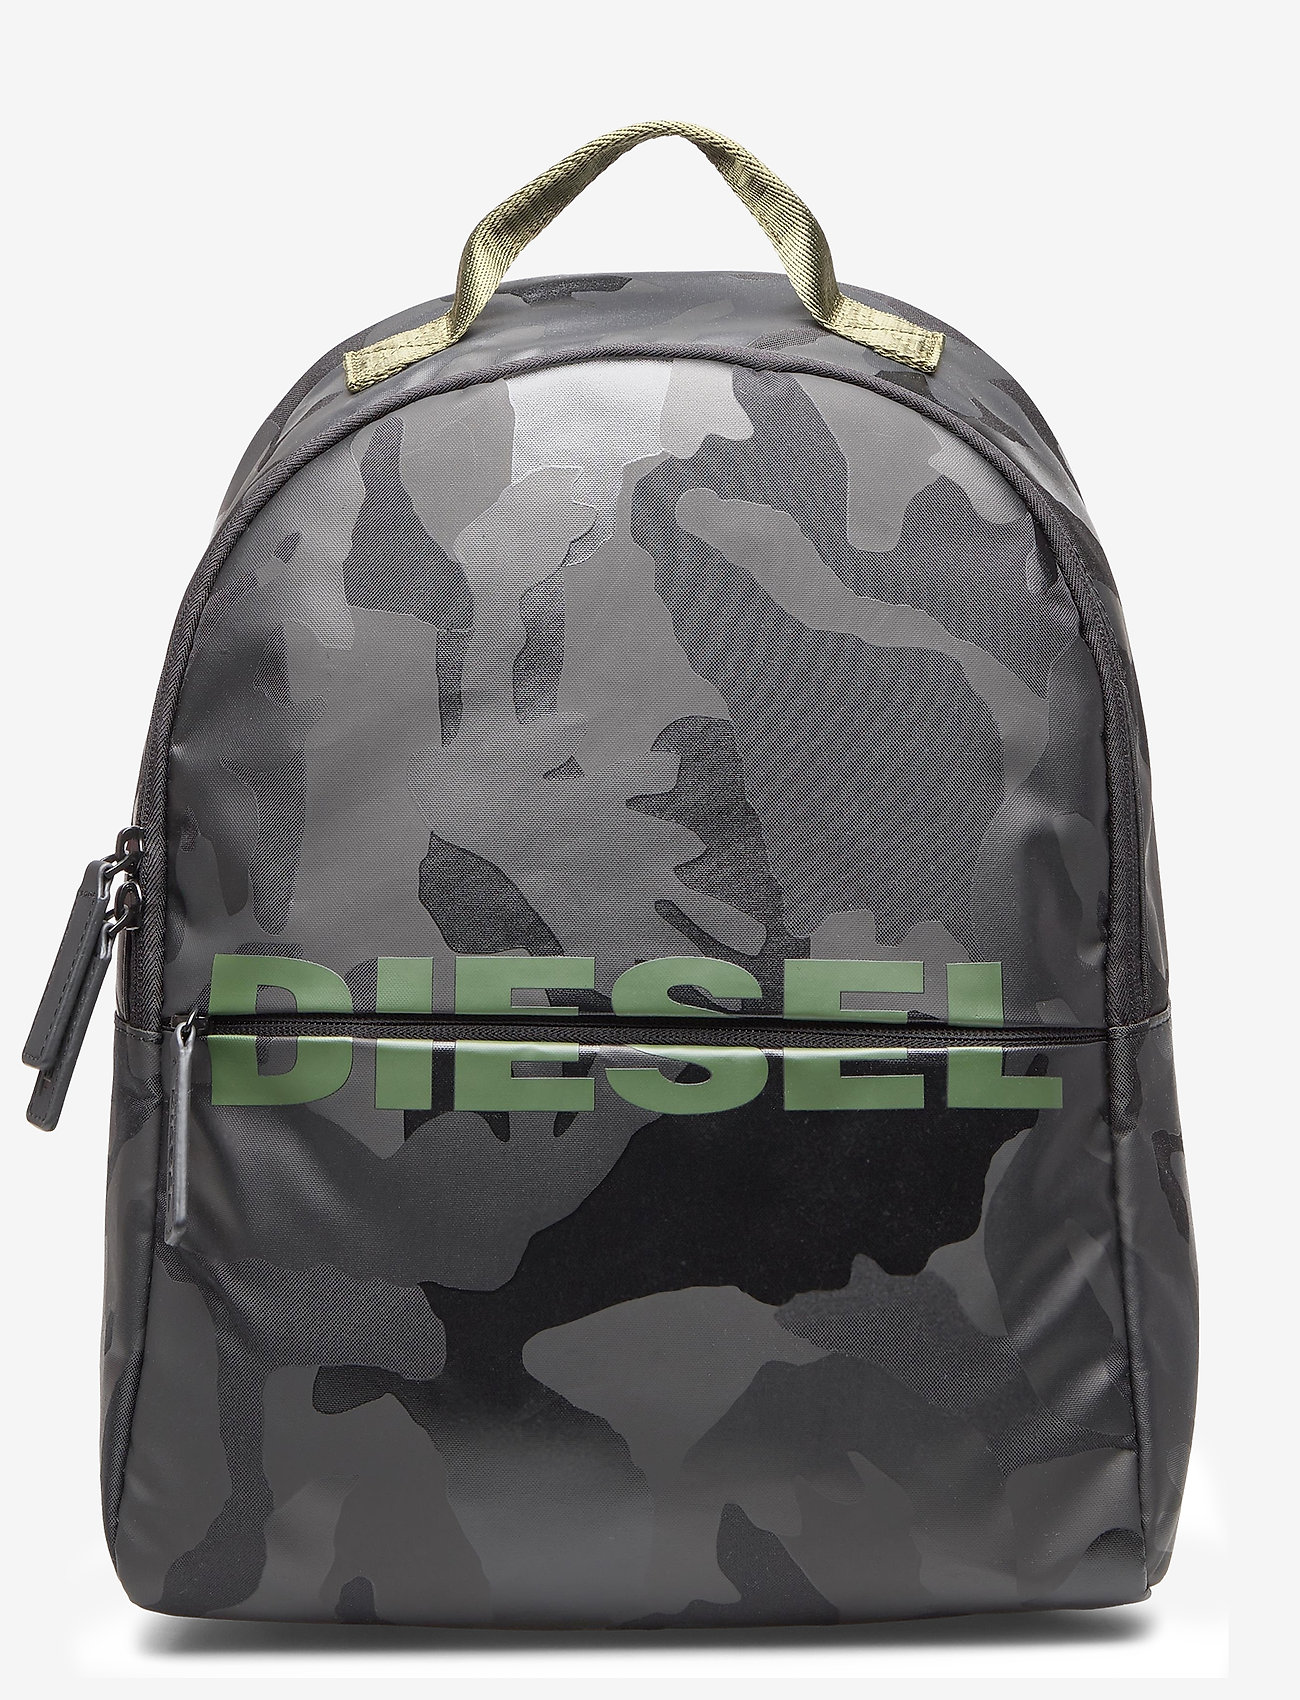 Diesel - "BOLDMESSAGE" BOLD BACKPACK - backp - black - 0